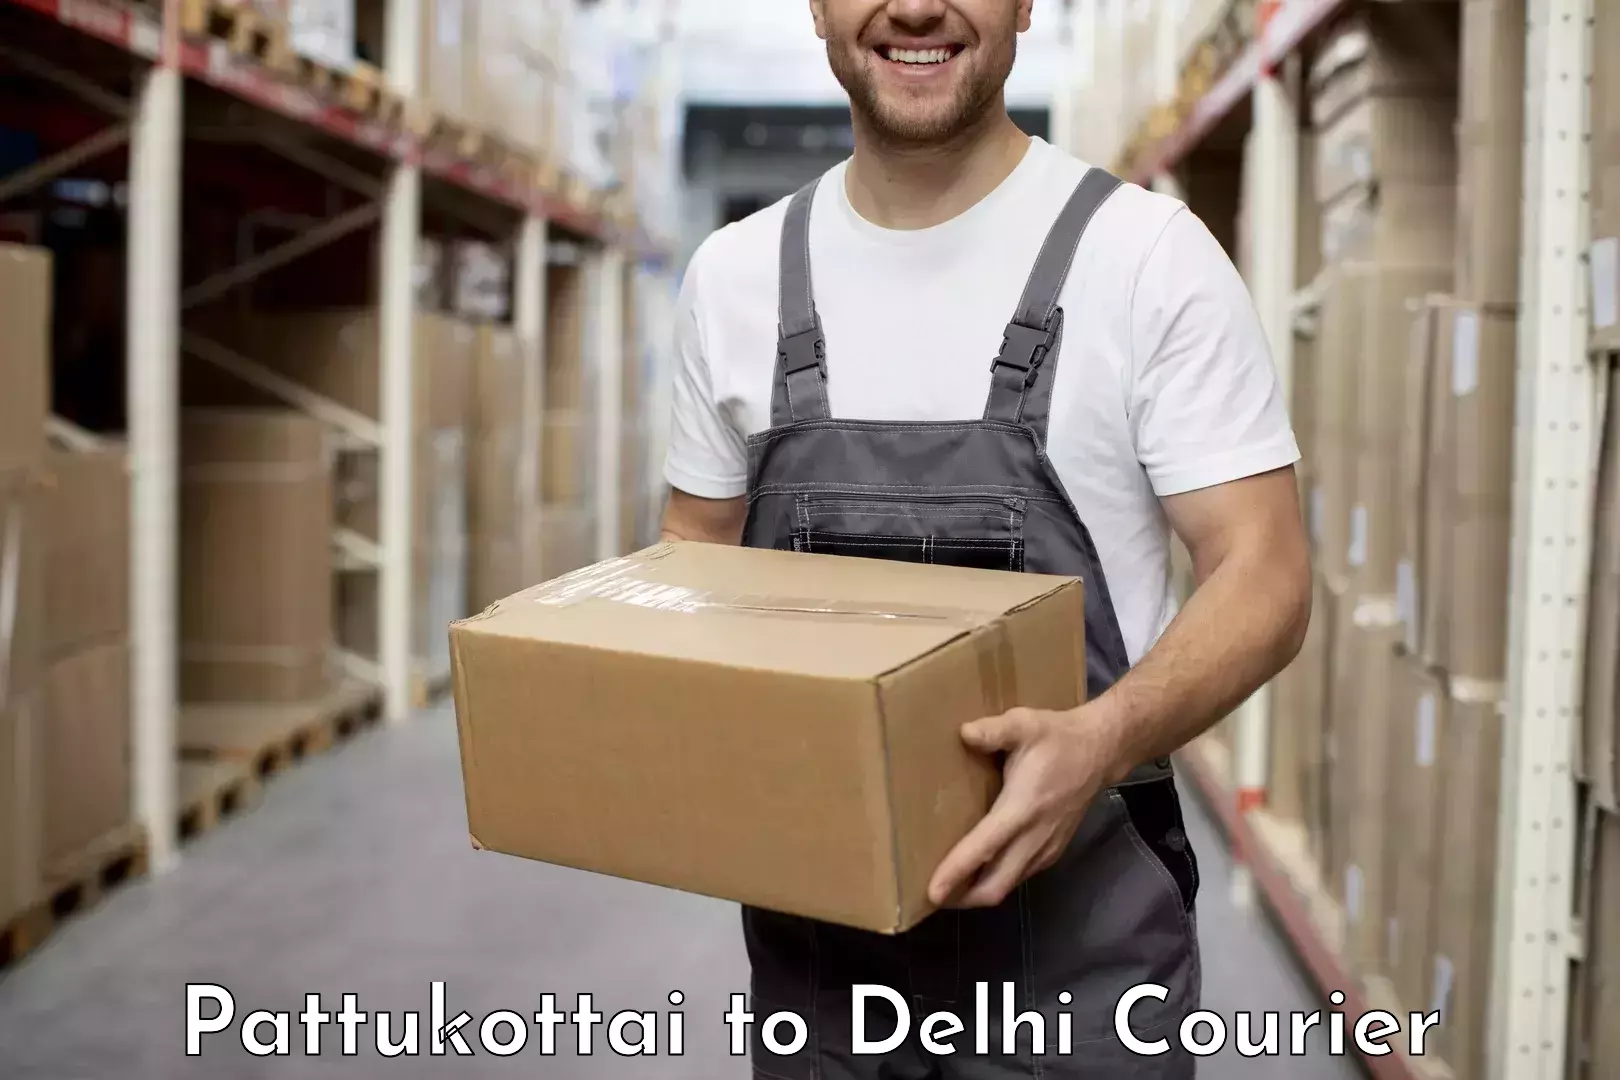 Fast delivery service Pattukottai to Delhi